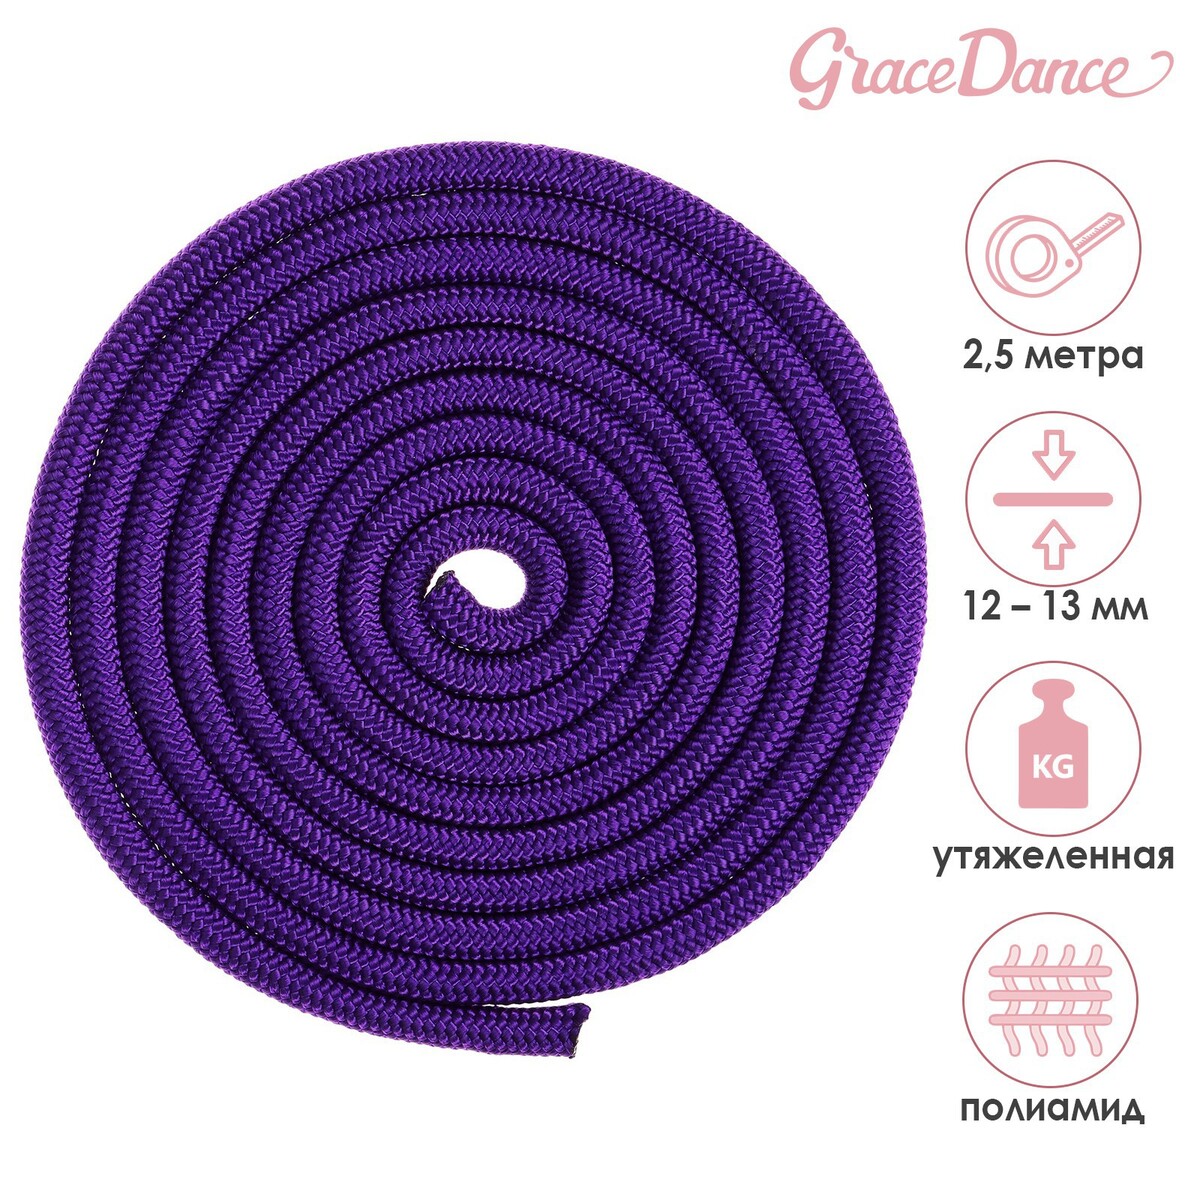 Скакалка для художественной гимнастики утяжеленная grace dance, 2,5 м, цвет фиолетовый подушка для растяжки grace dance фиолетовый